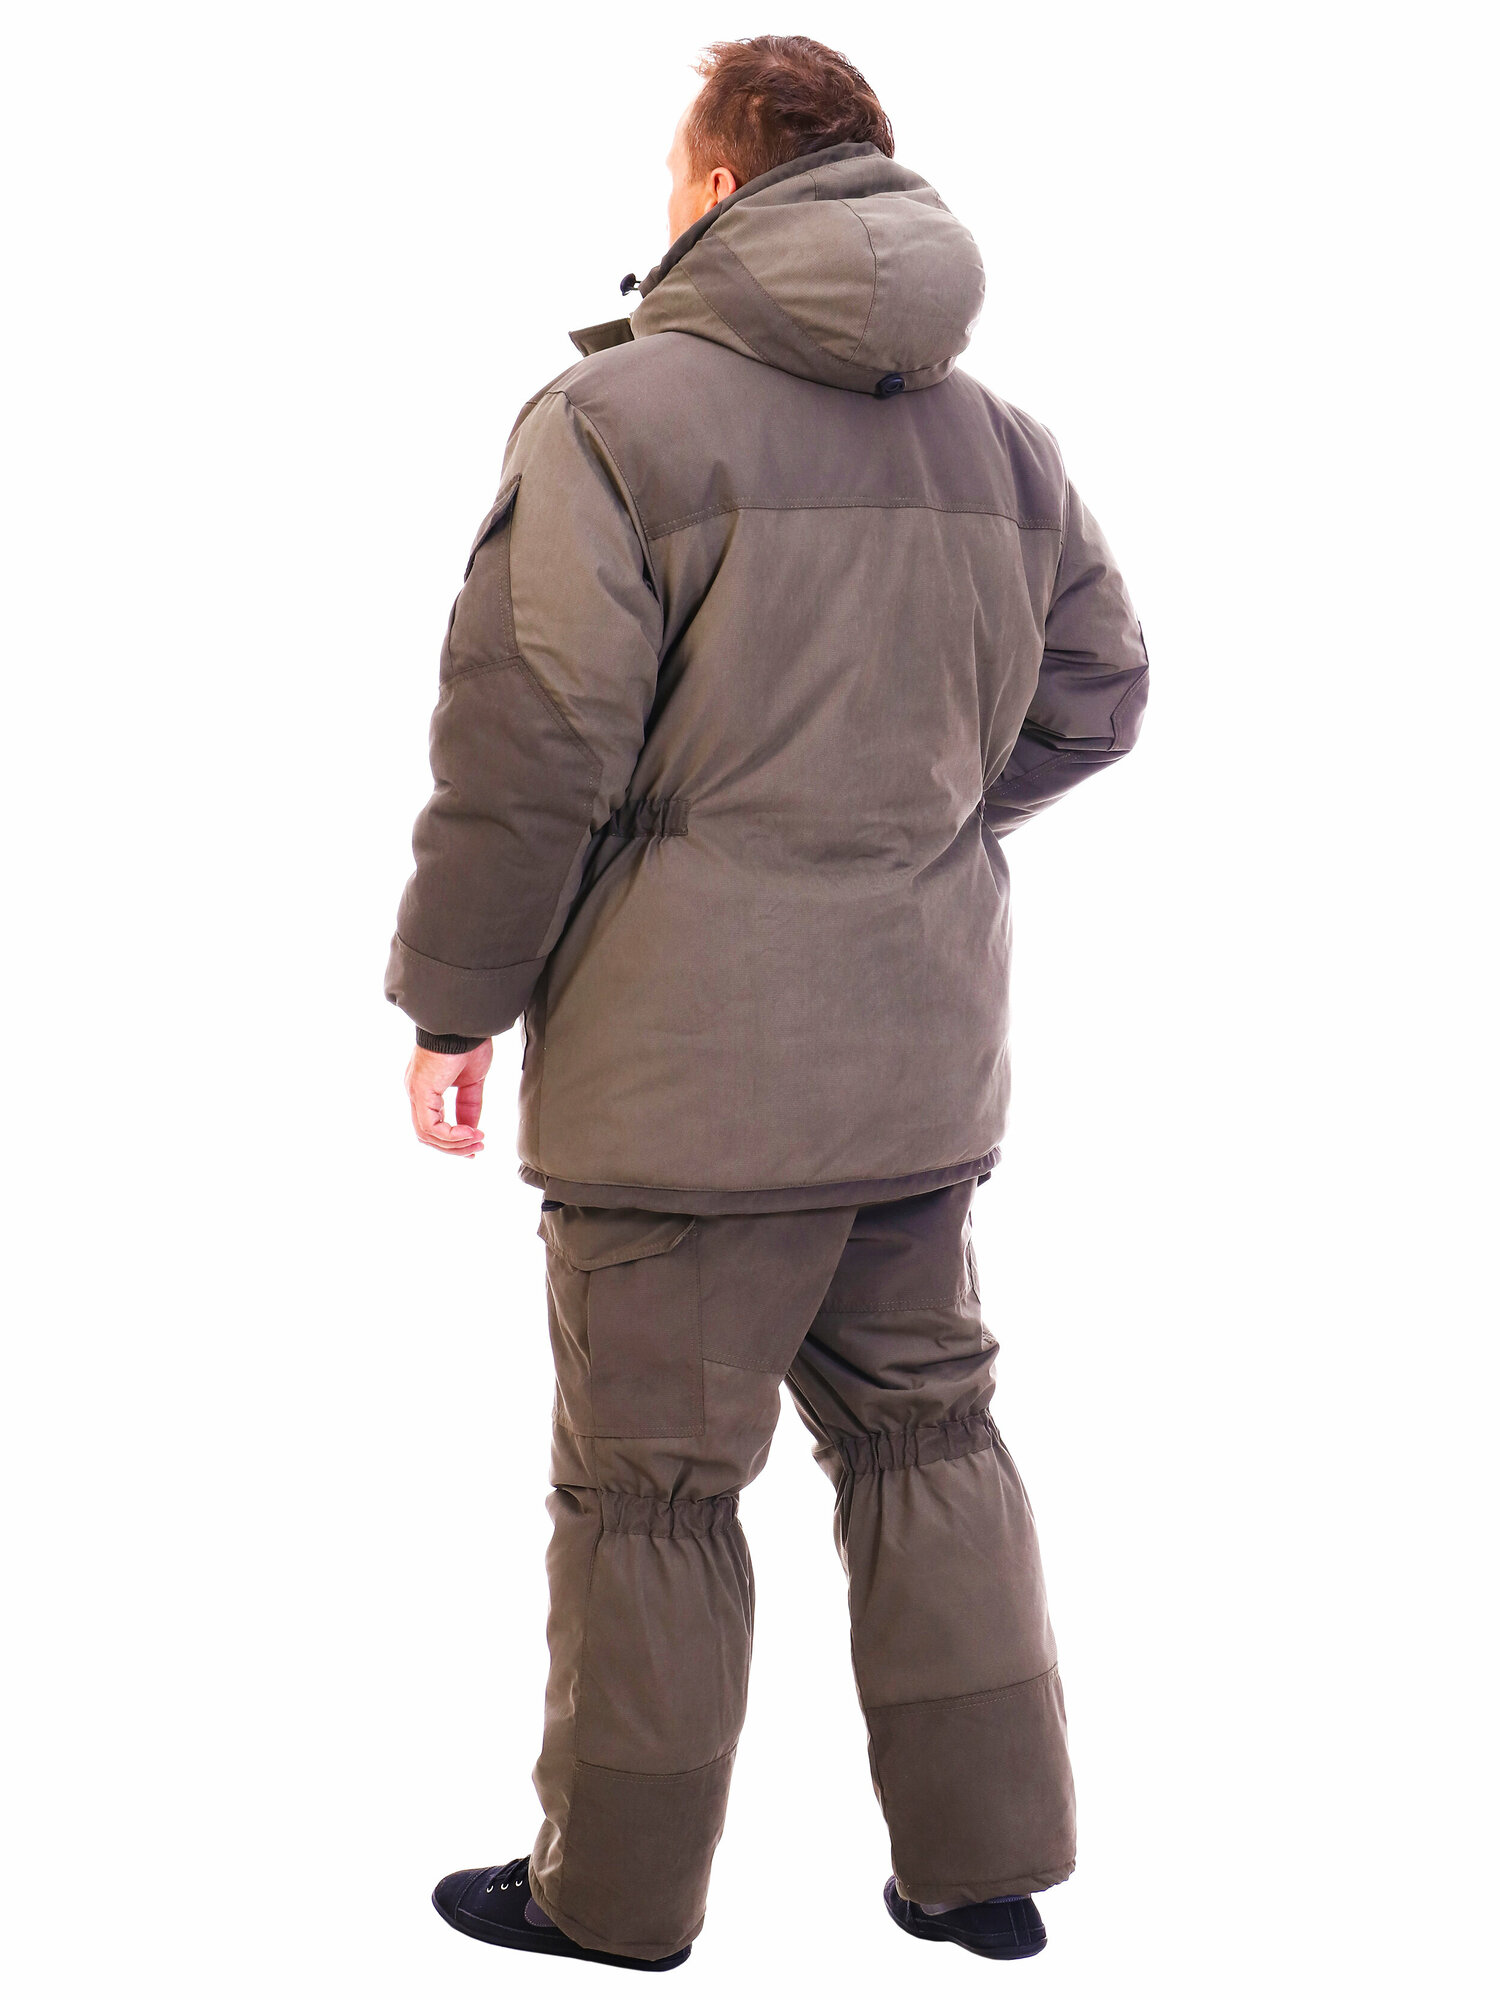 Восток-текс / костюм зимний Горка рыболовный мембрана для активного отдыха, охота, рыбалка, туризм